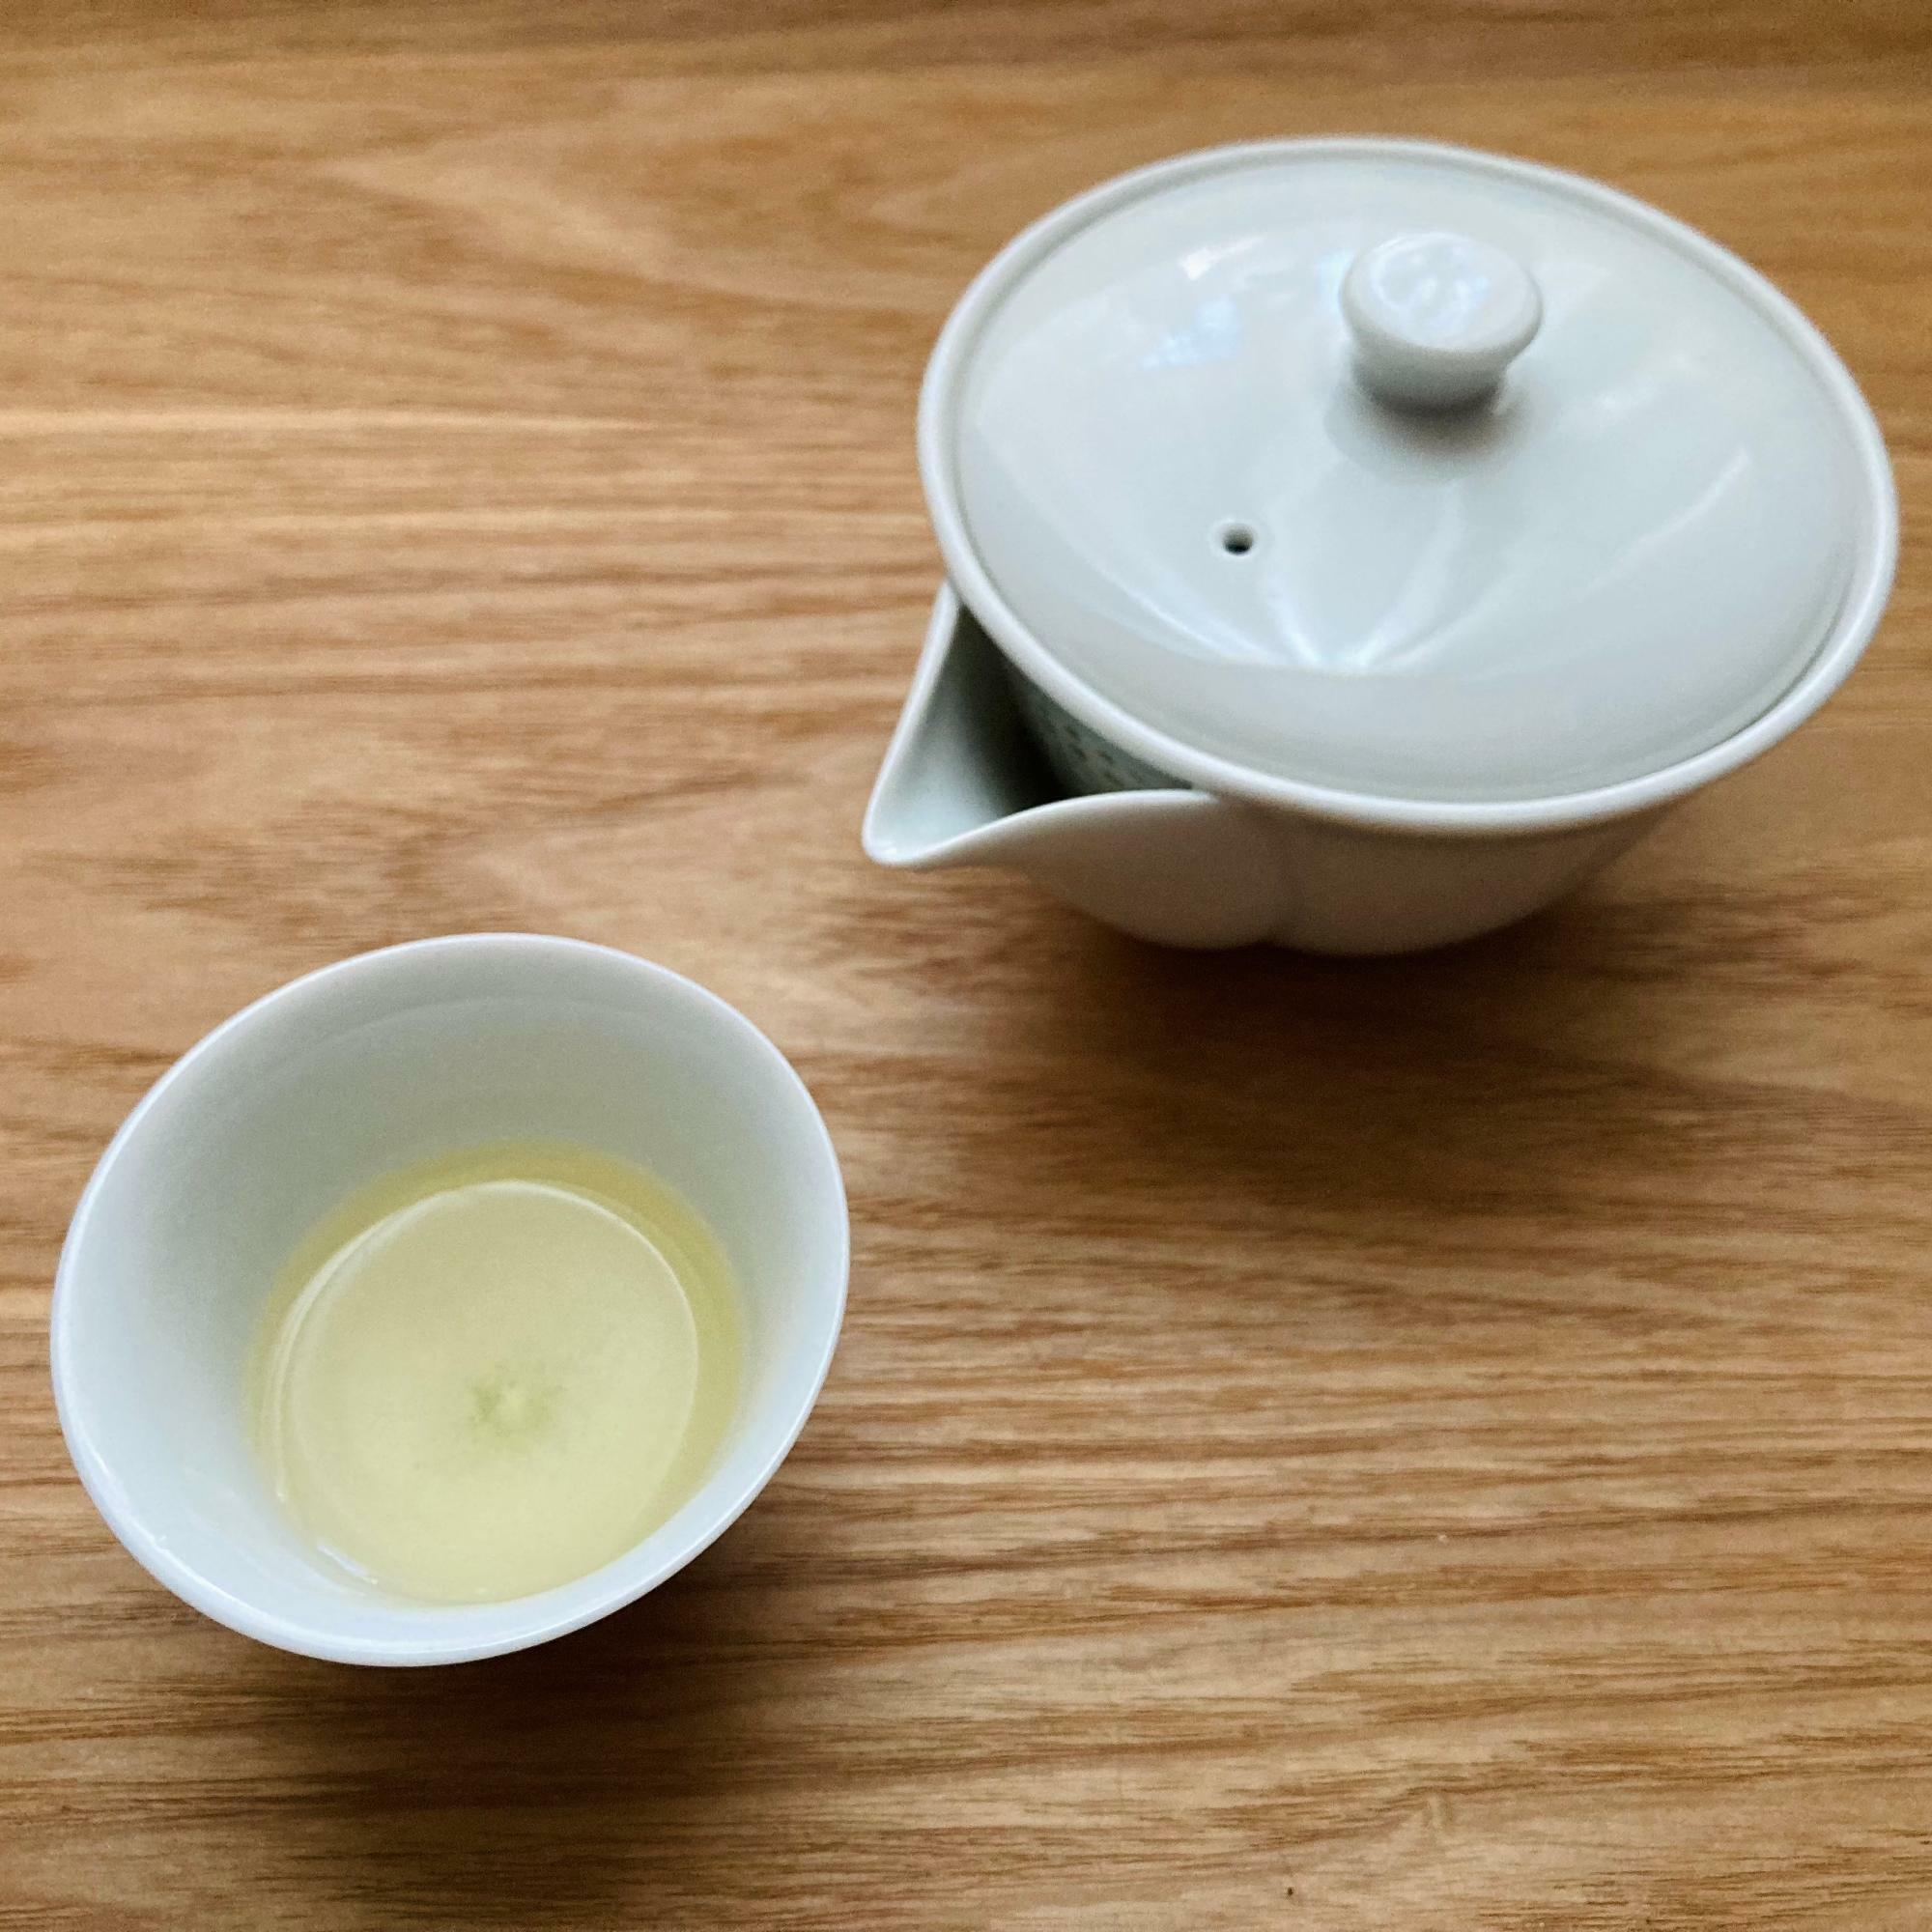 お茶の色は薄い黄色。うま味と甘味が凝縮され少量で満足感のある濃厚な味。お茶碗はお猪口より小さいサイズ。